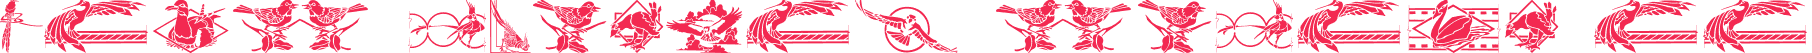 bird stencil design ii